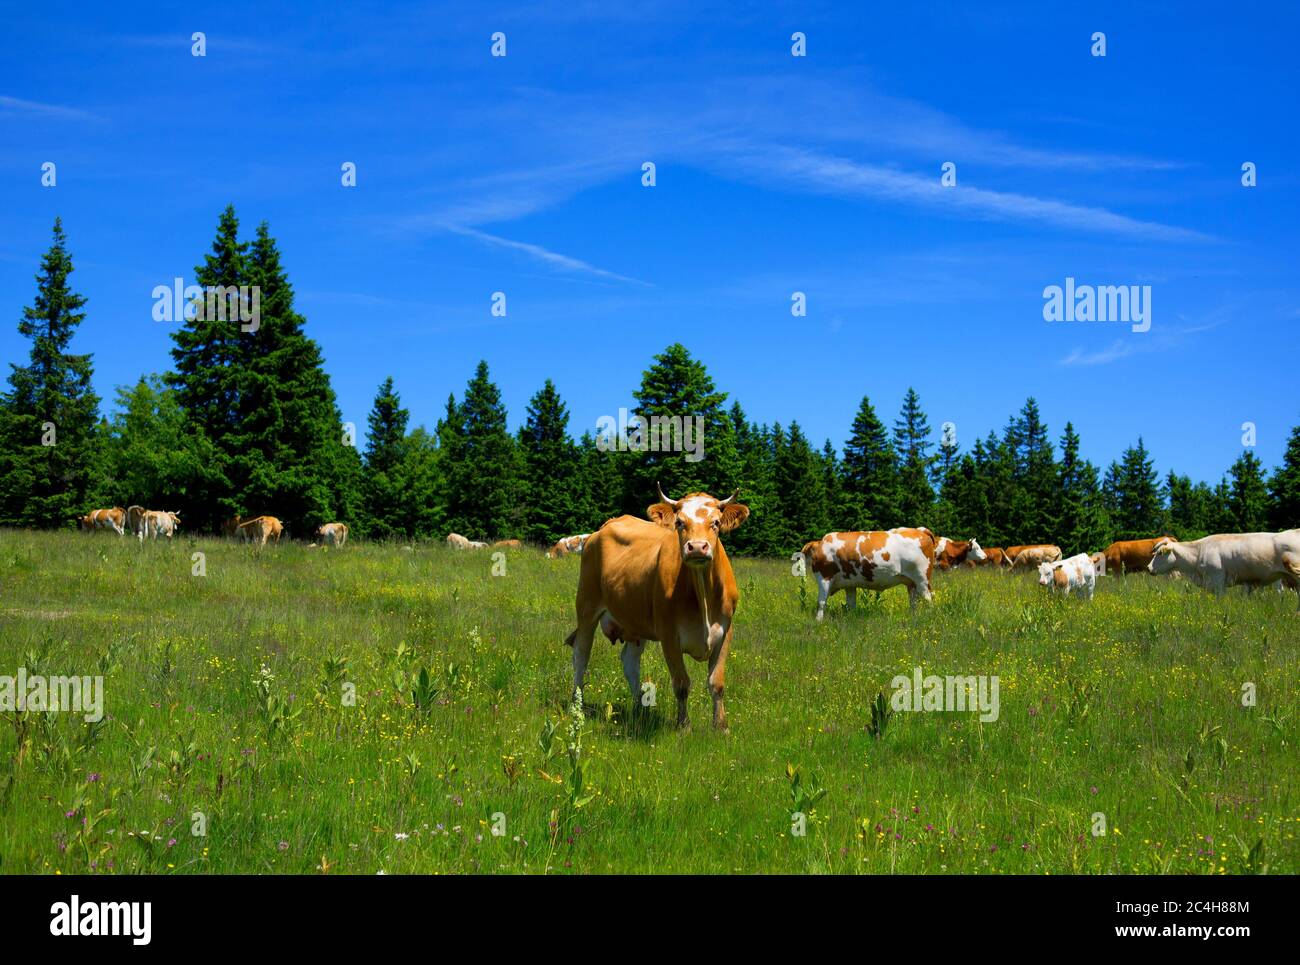 Rogla, catena montuosa di Pohorje, Slovenia, Europa - mucche al pascolo. Scenario di bella natura slovena e di agricoltura animale Foto Stock